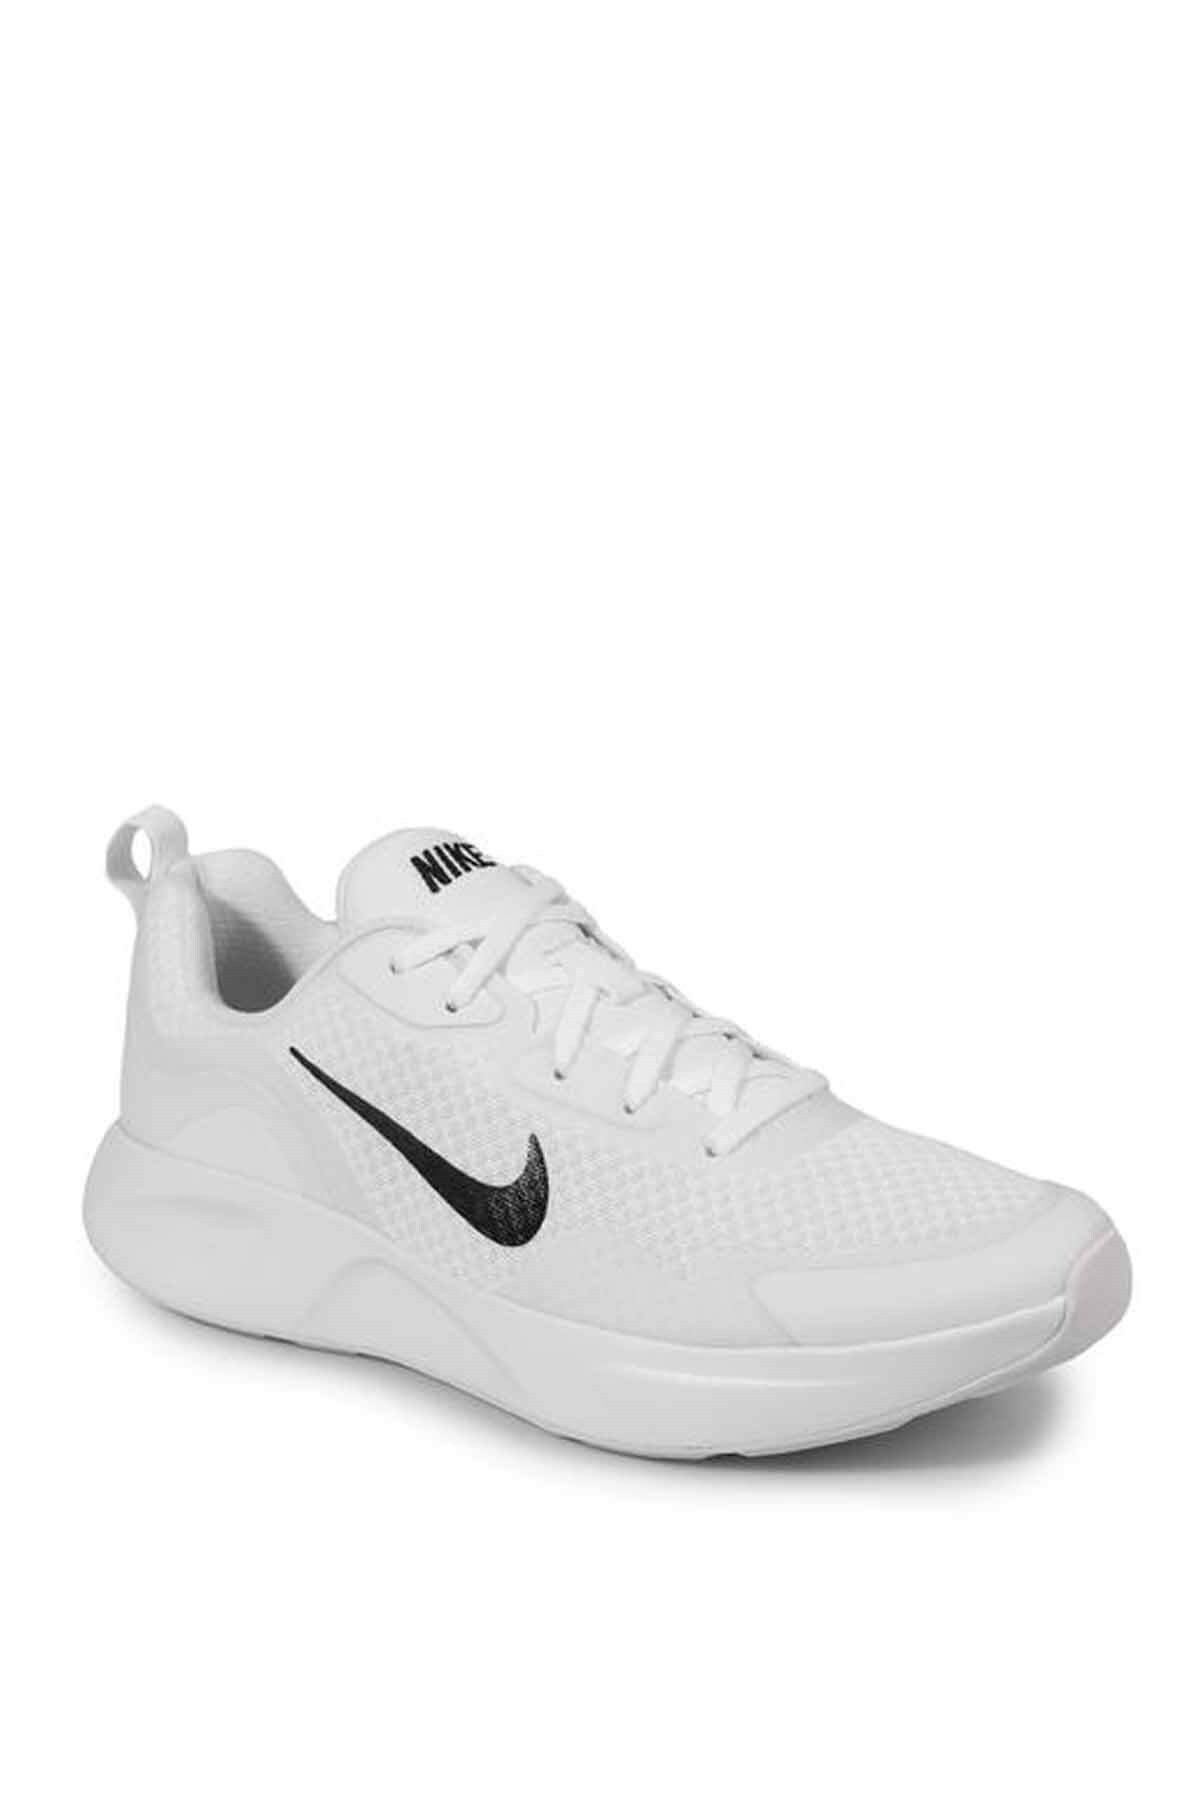 Nike Wearallday Erkek Günlük Spor Ayakkabı Cj1682-101-beyaz